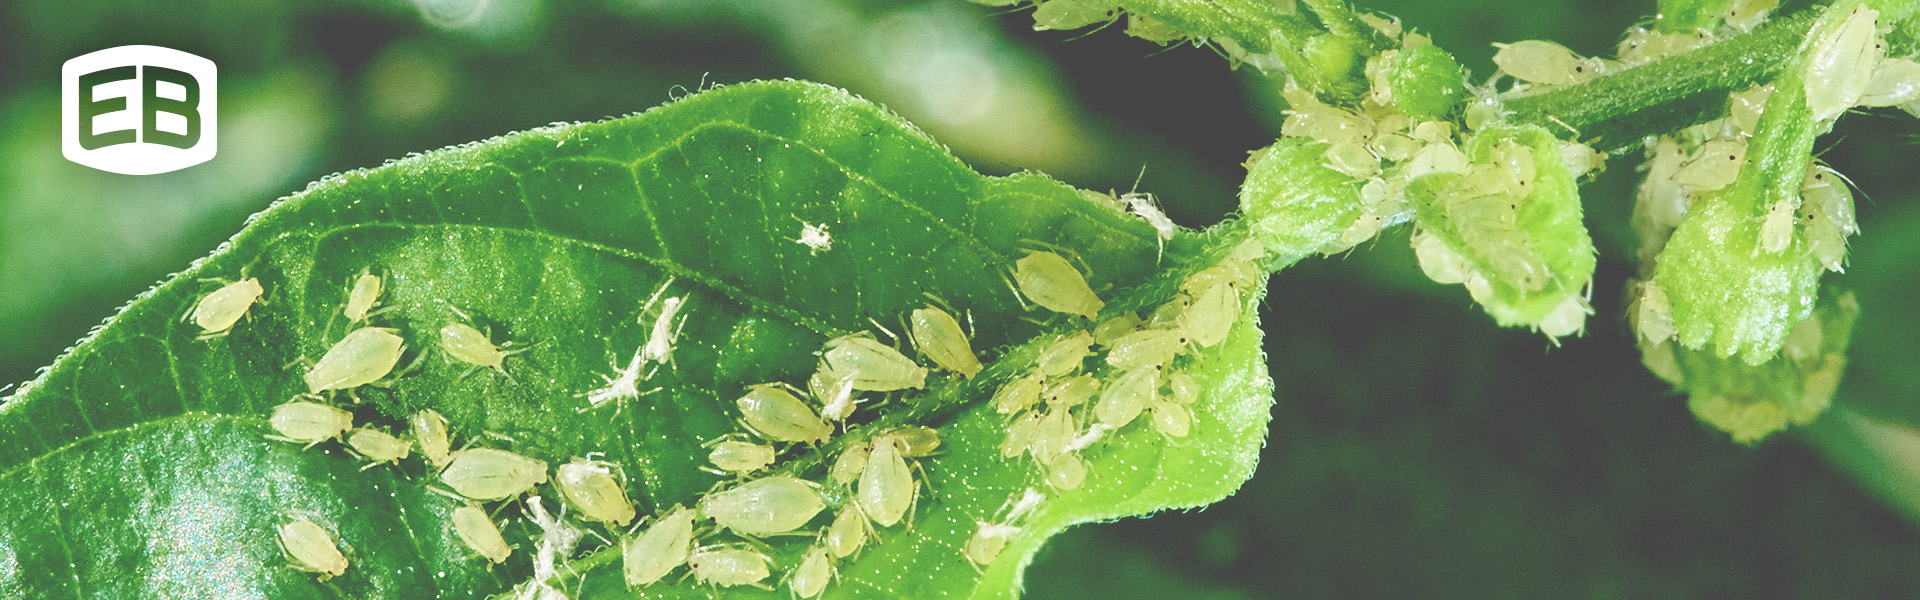 Tree Pest Control | Fruit Tree Pest Control | Oak Tree Pests | Pine Tree Pests | Elm Tree Pests | Maple Tree Pests